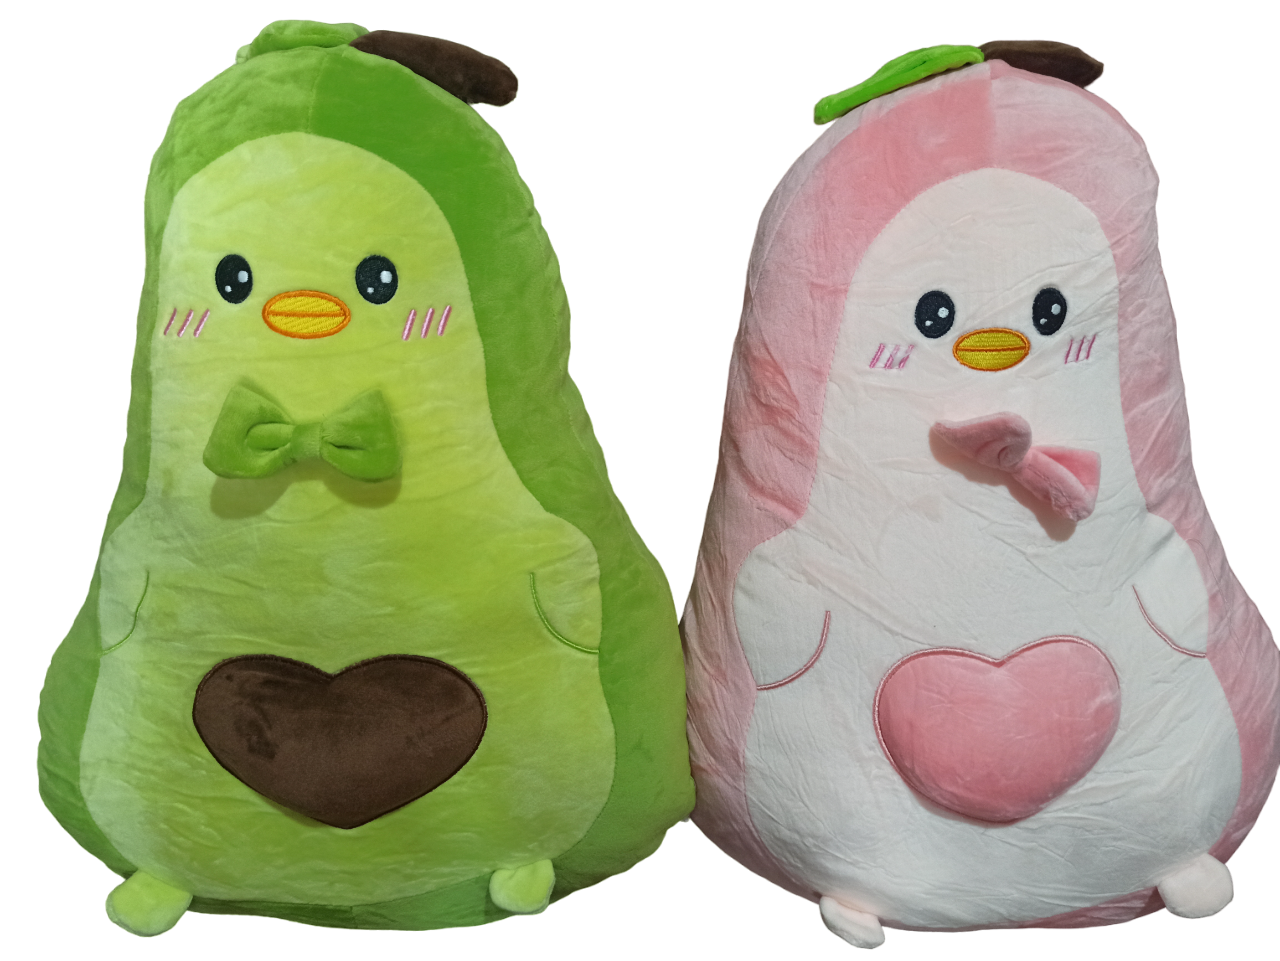 М'яка Плюшева Іграшка-Подушка Авокадо 40 см, колір зелений та рожевий